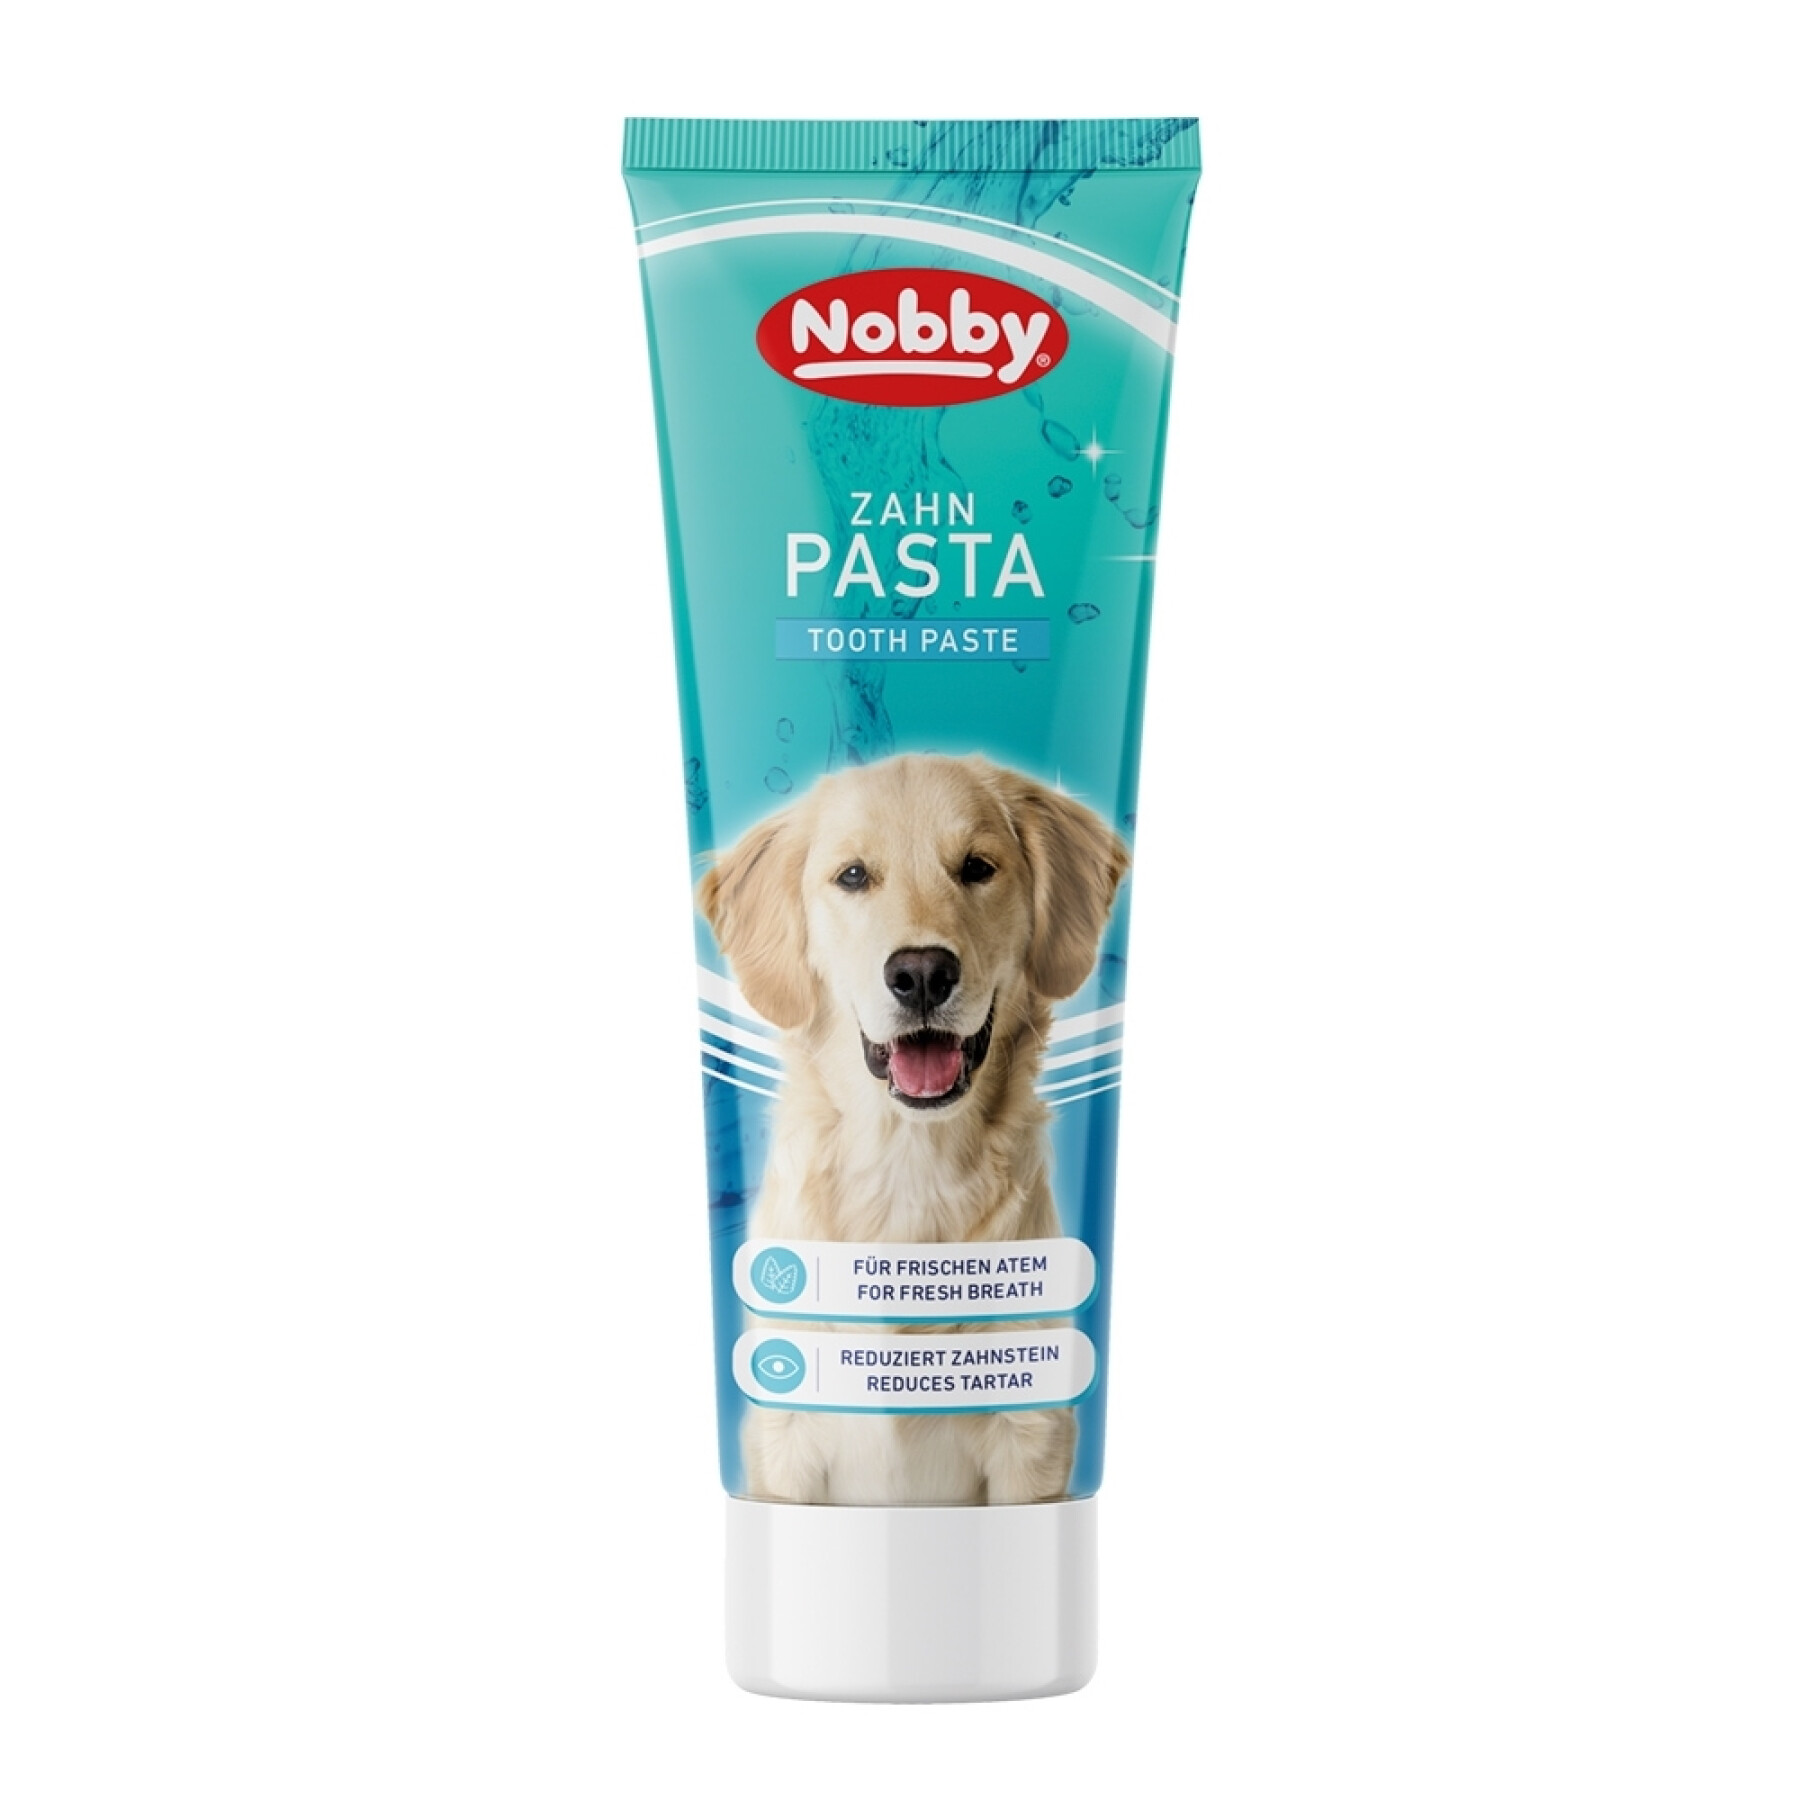 Pasta de dentes de menta para cães Nobby Pet